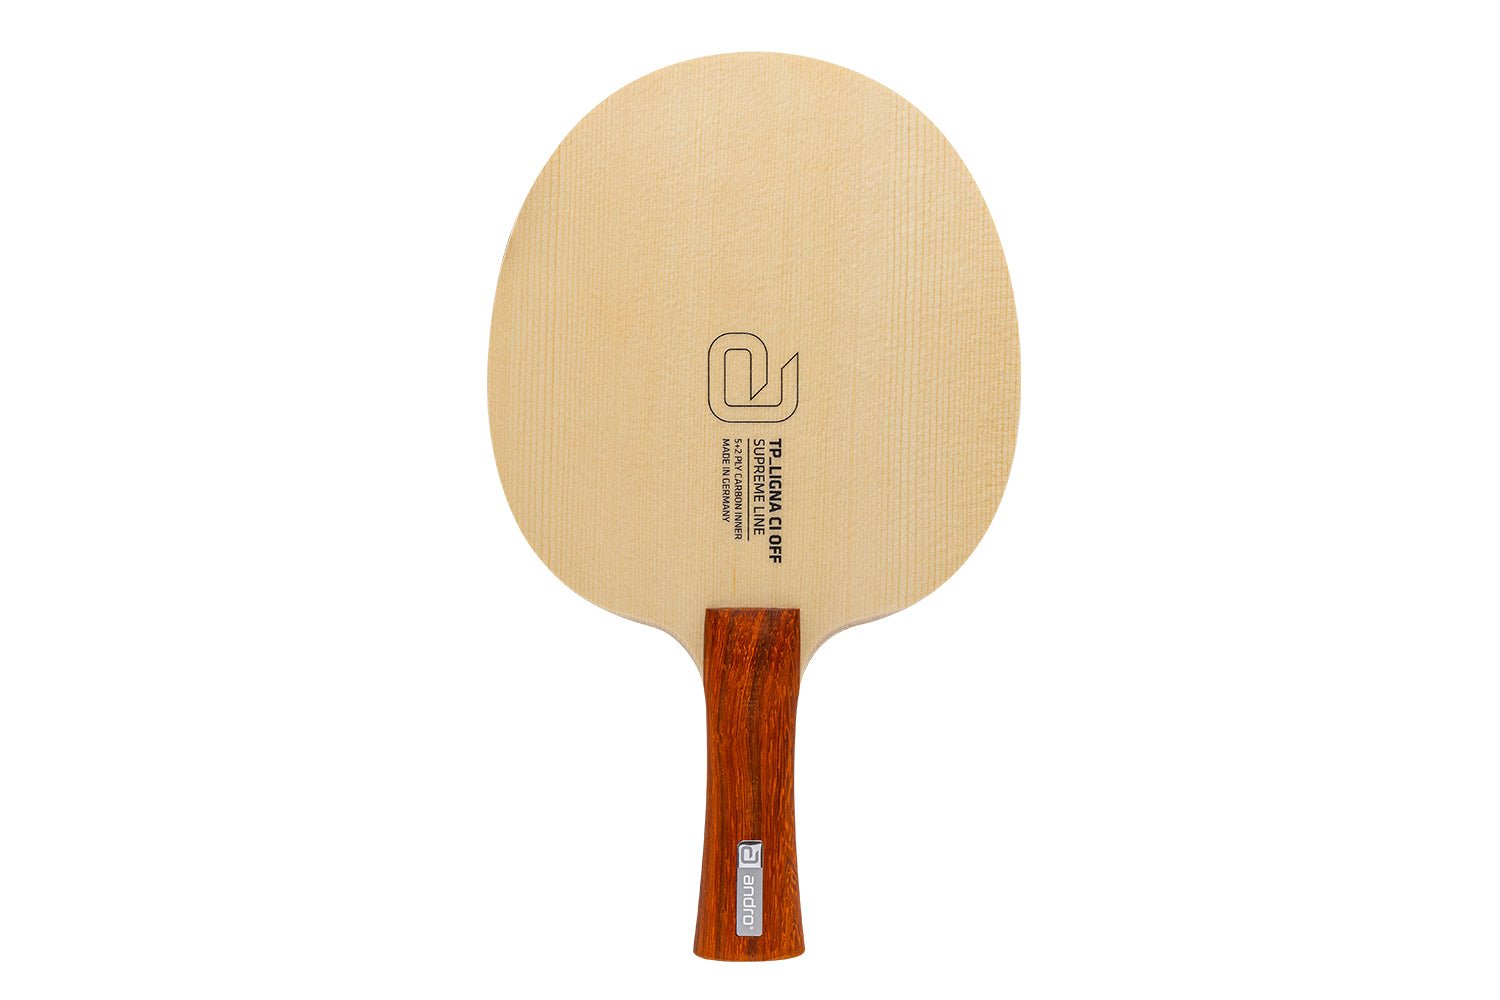 andro TP Ligna CI Tischtennisschläger mit konkavem Griff, vor weißem Hintergrund